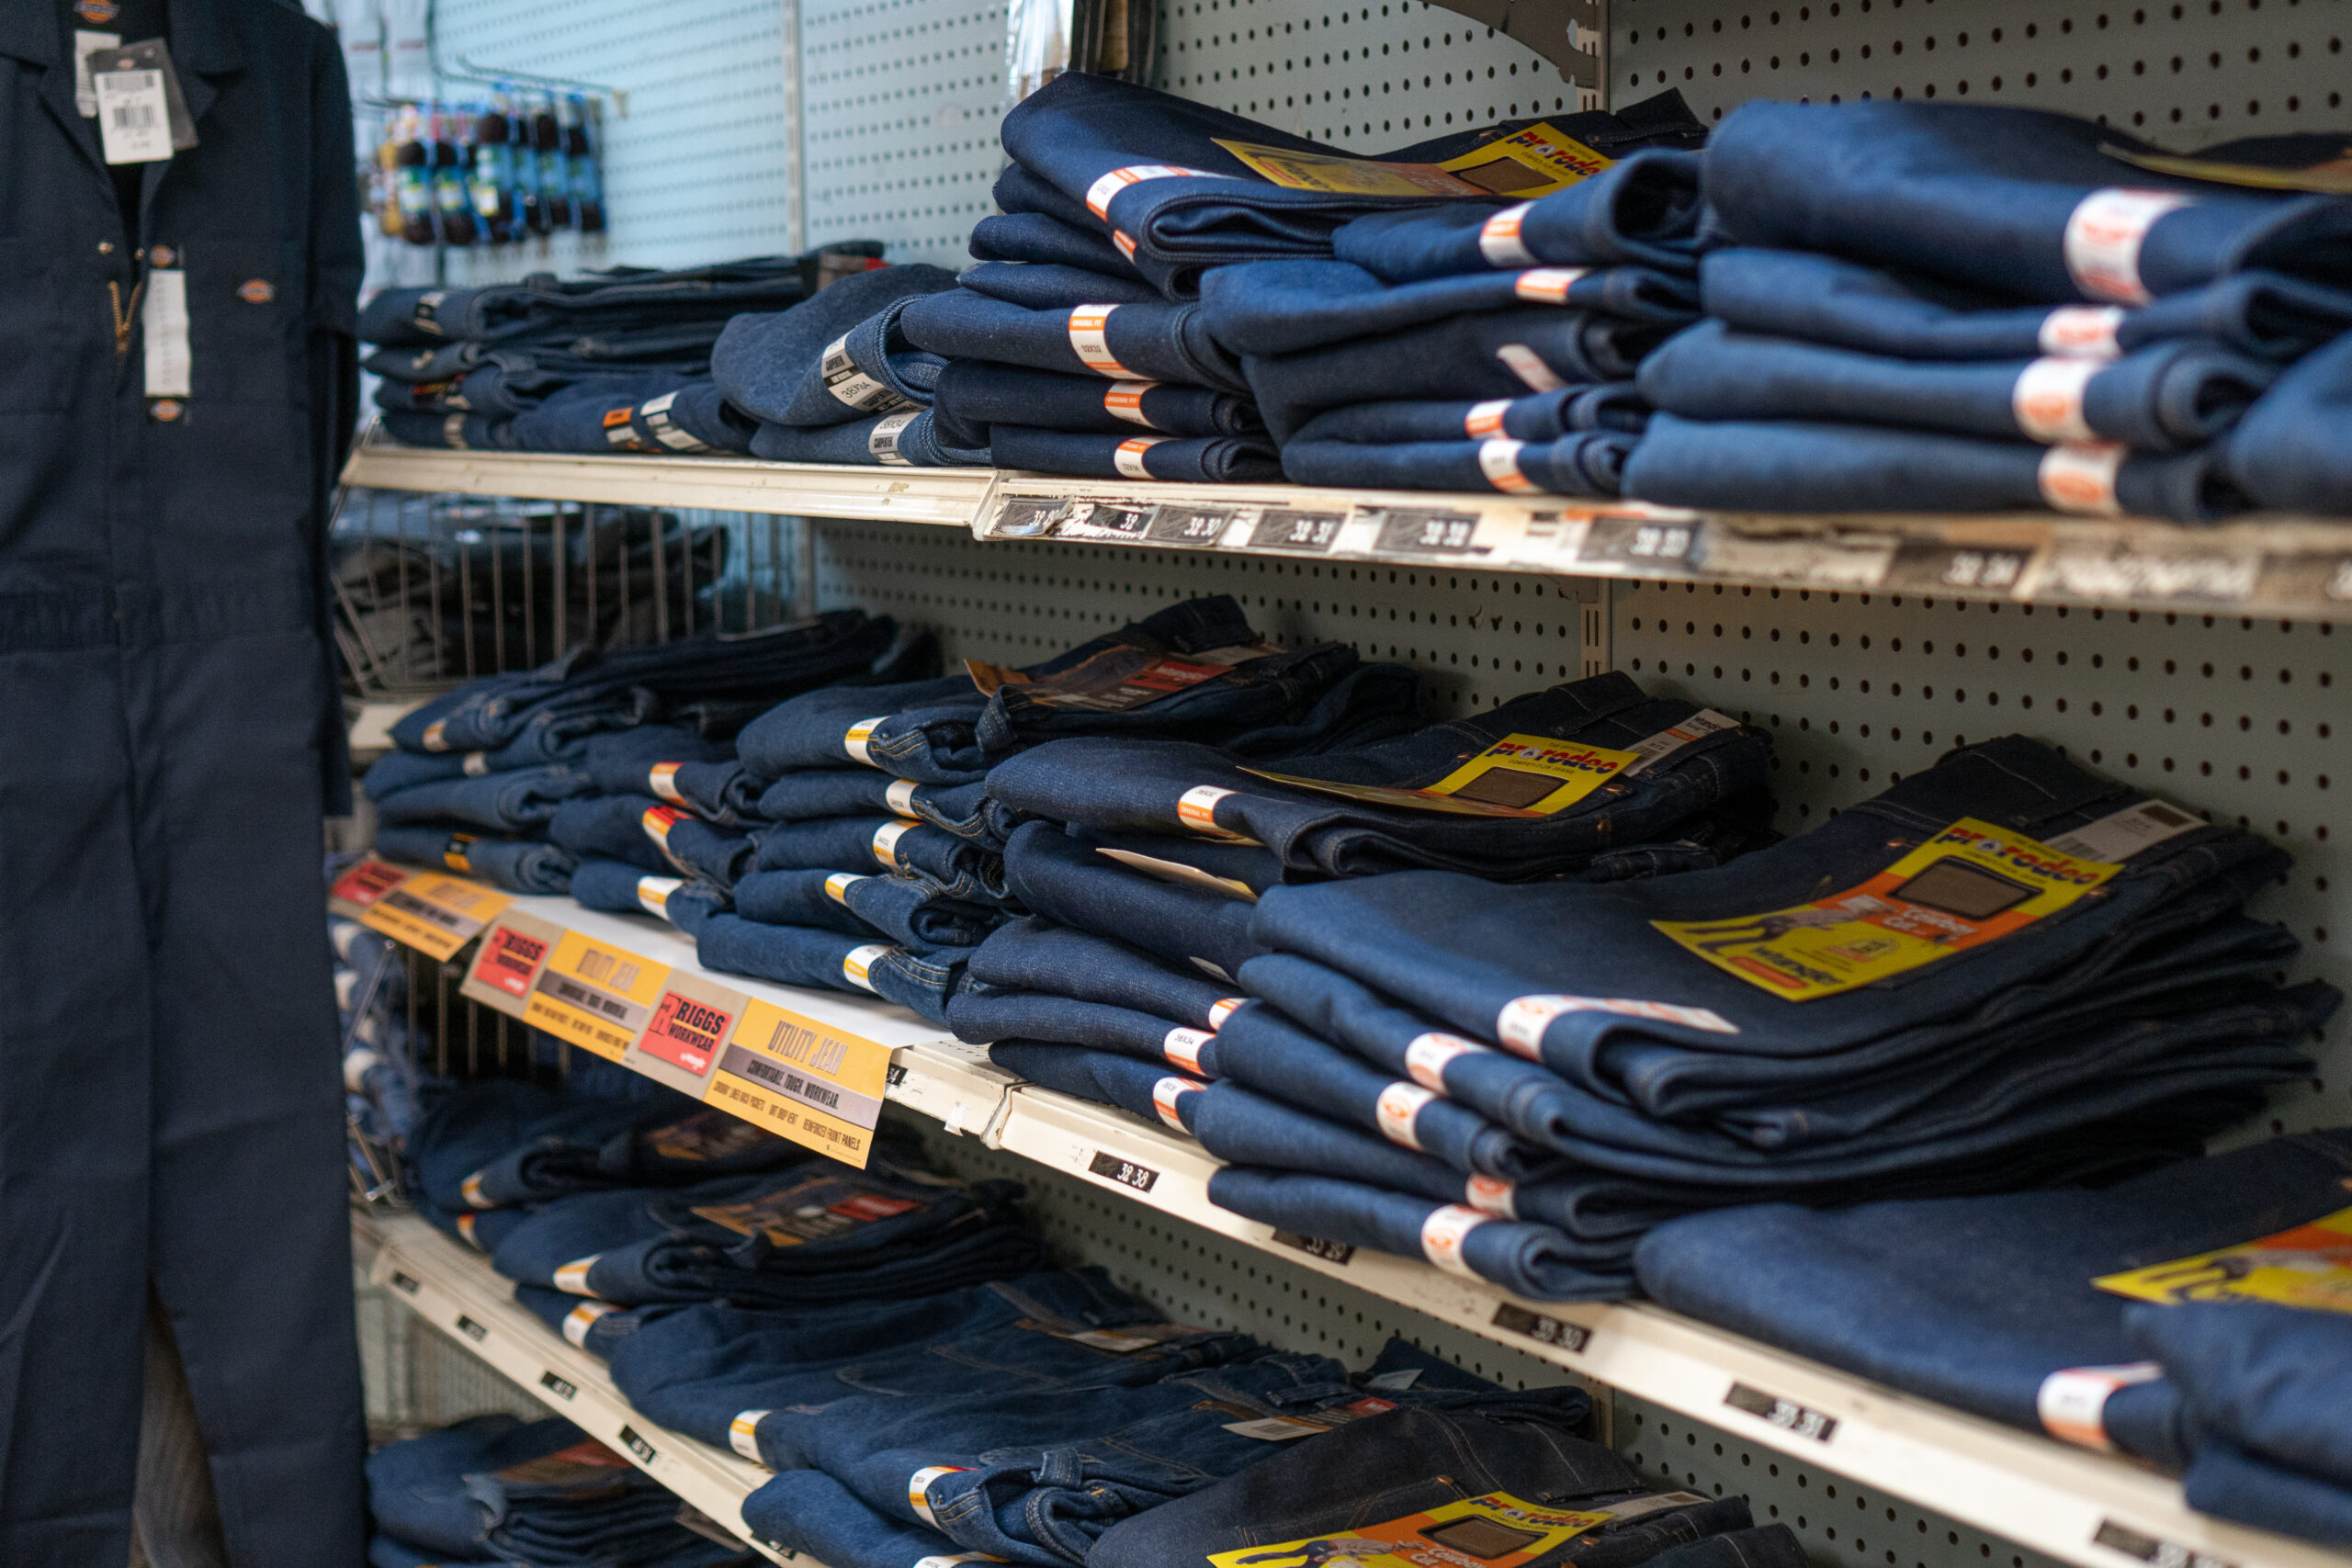 Shelves full of work jeans from Wrangler & Utility Jeans